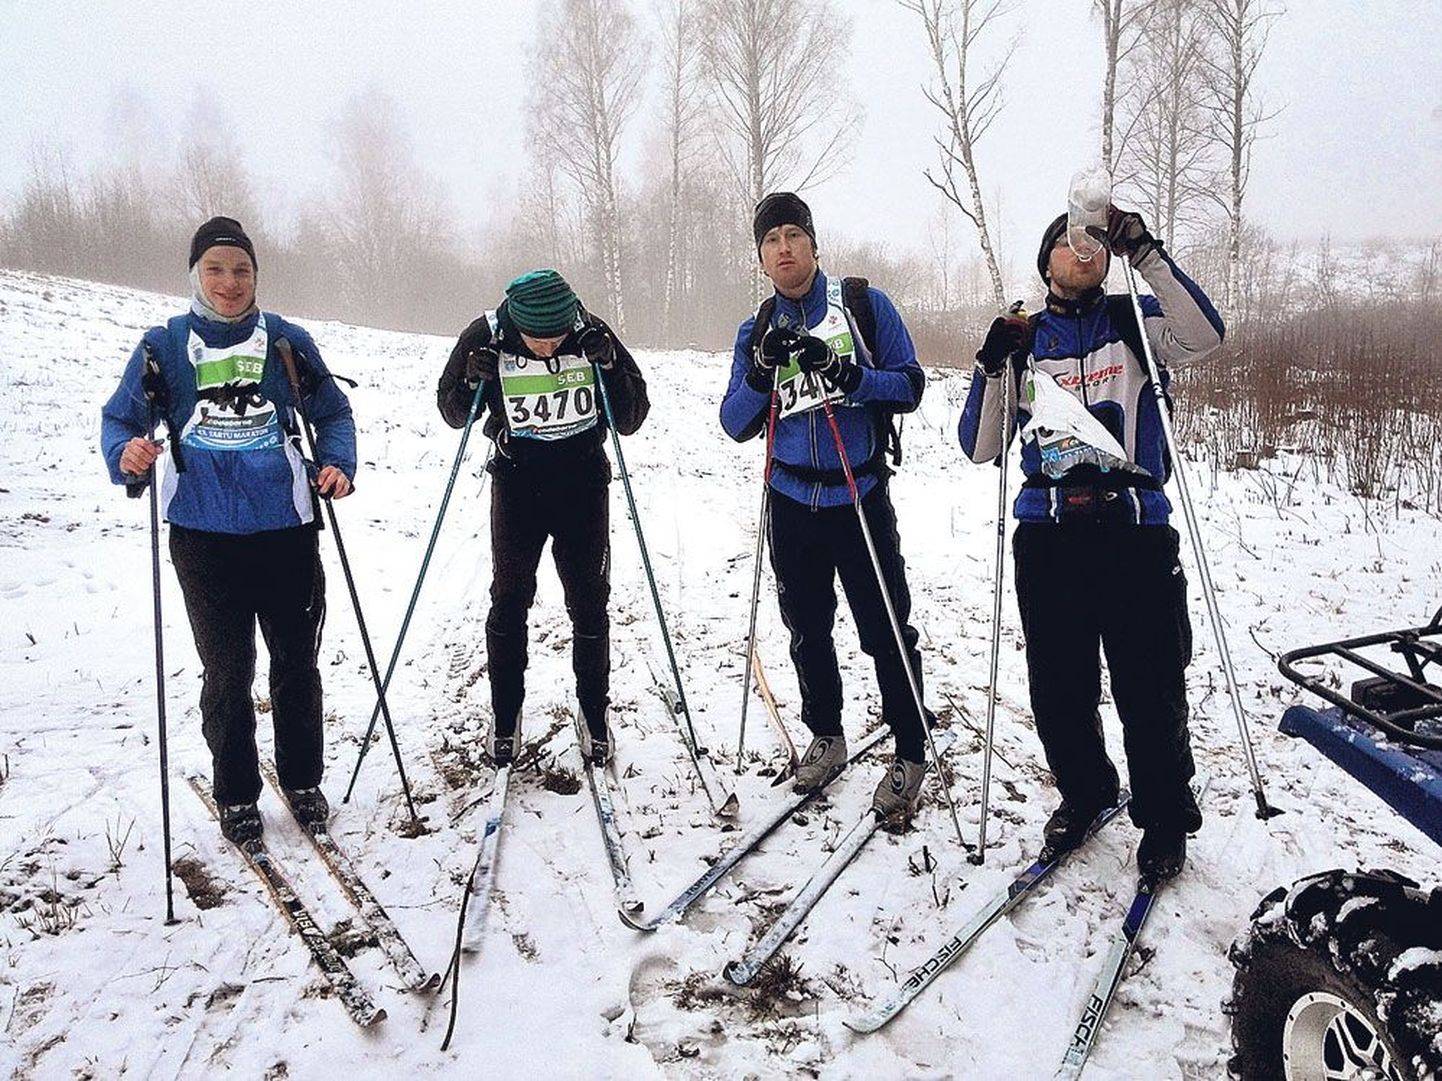 Pool maratoni läbitud. Jaan Jänes (vasakult), Kaupo Karja, Jürgo Väli ja Kenneth Koosma.